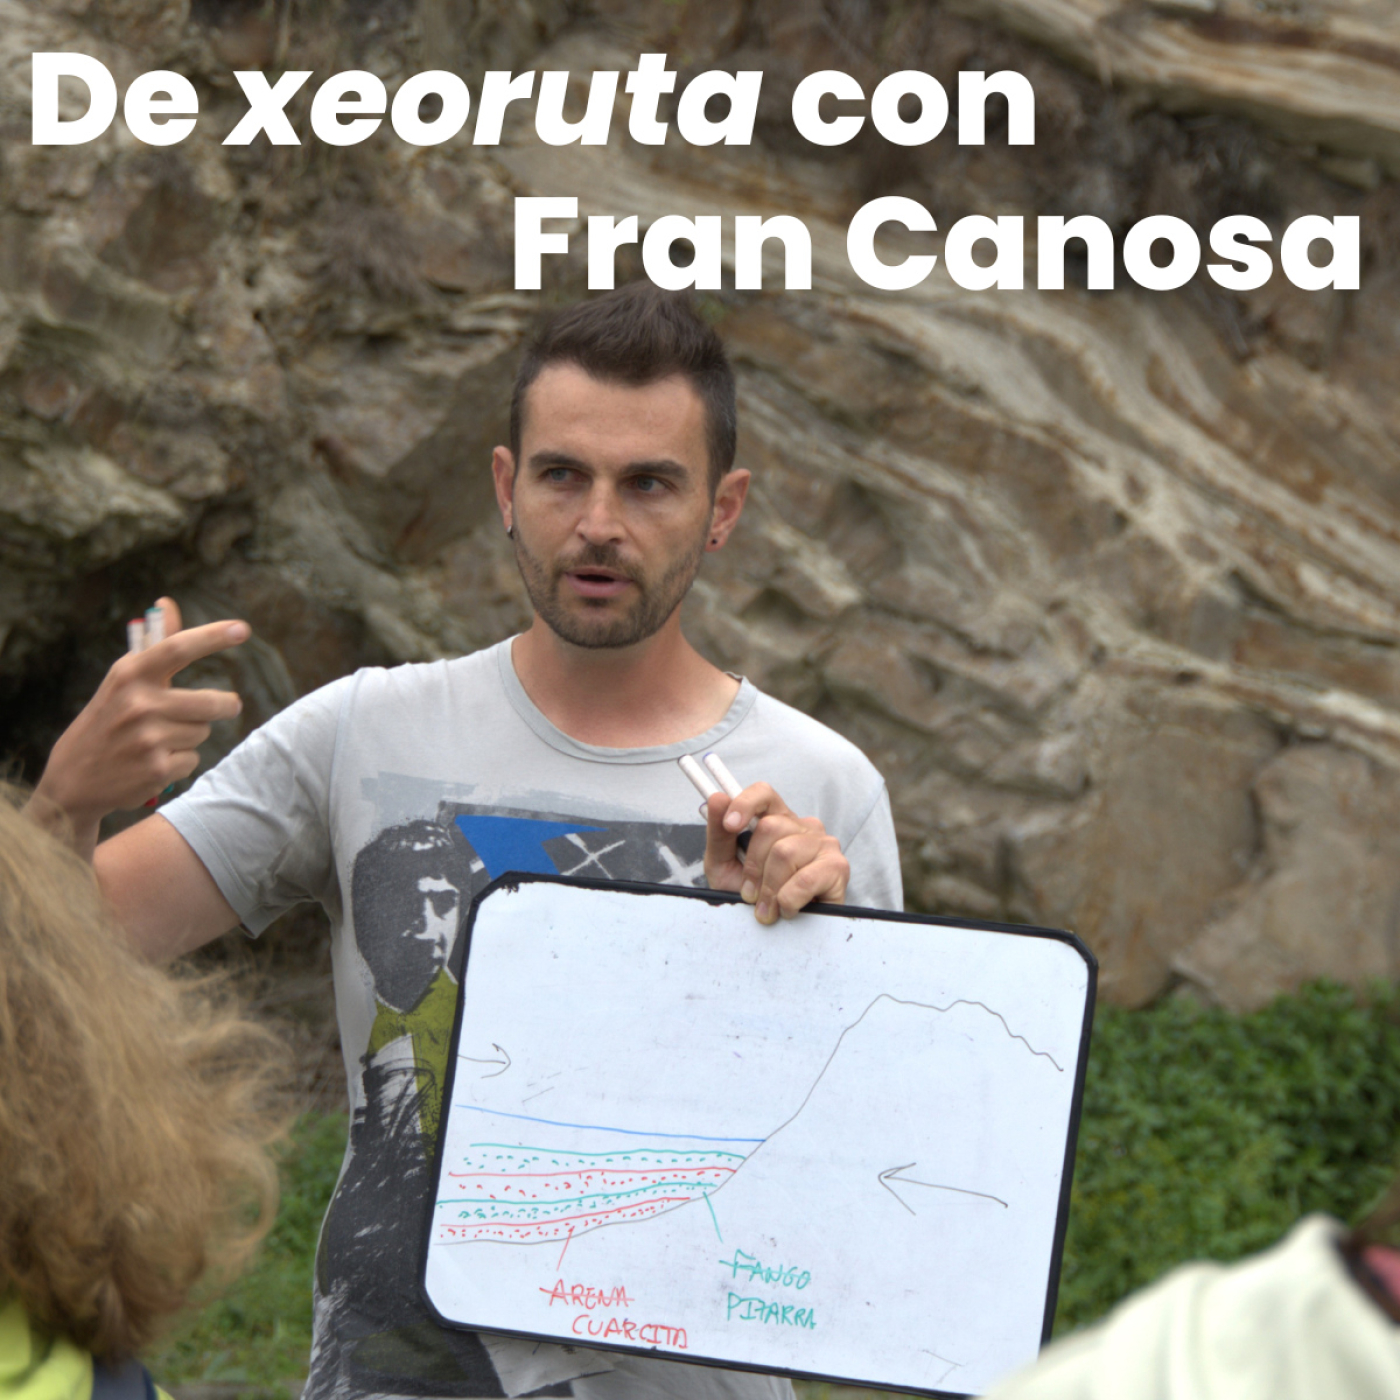 Efer 605 (20-7-22): De paseo xeolóxico con Fran Canosa